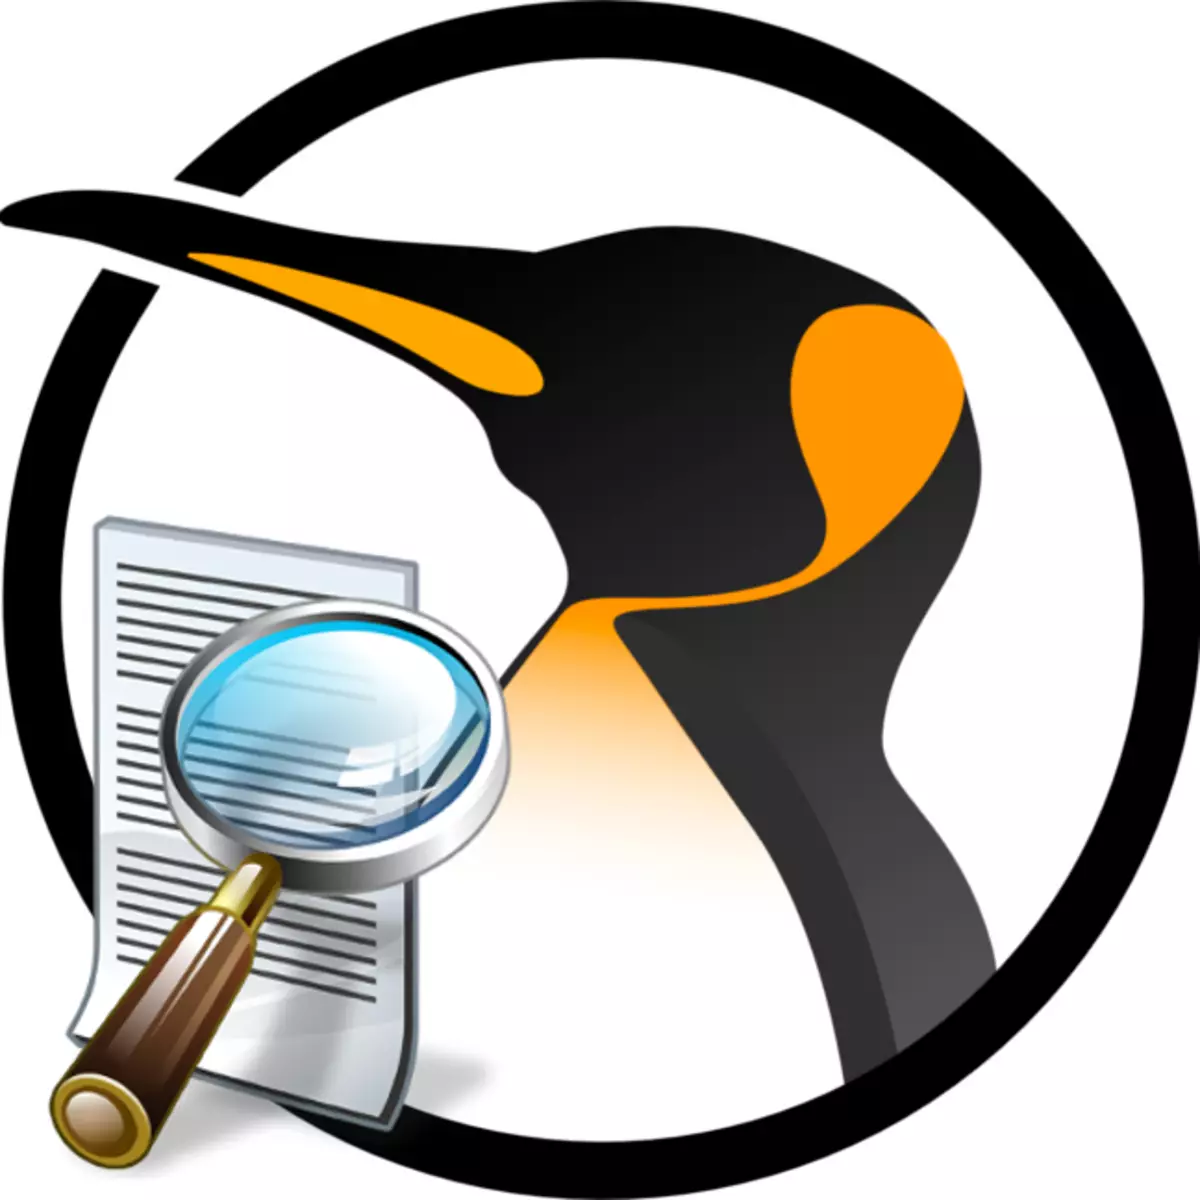 ဖိုင်များကို Linux တွင်မည်သို့ရှာဖွေရမည်နည်း